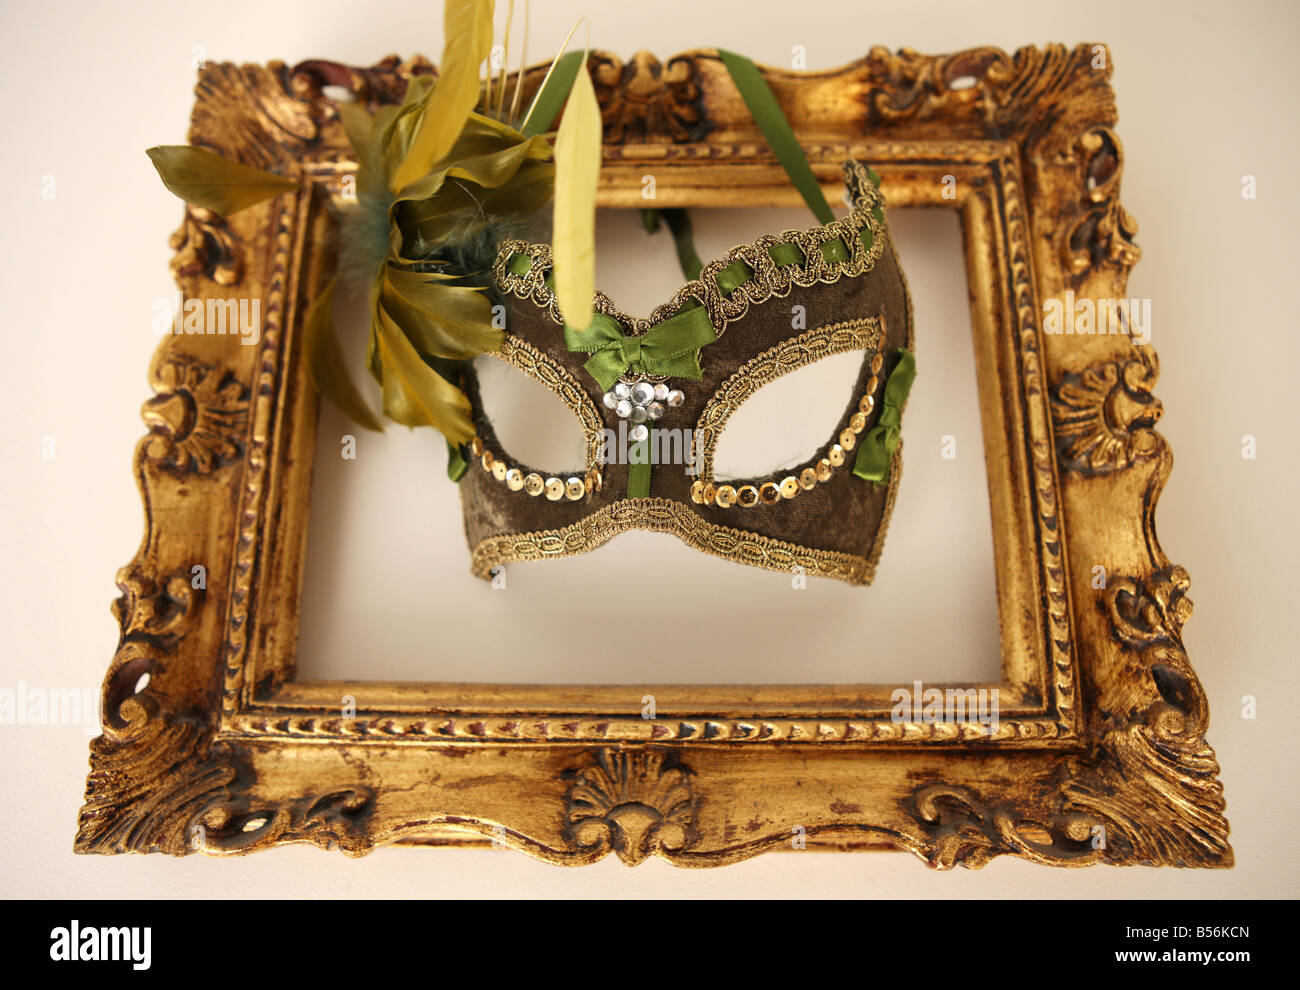 Masque vénitien décoratif dans un cadre d'or Photo Stock - Alamy